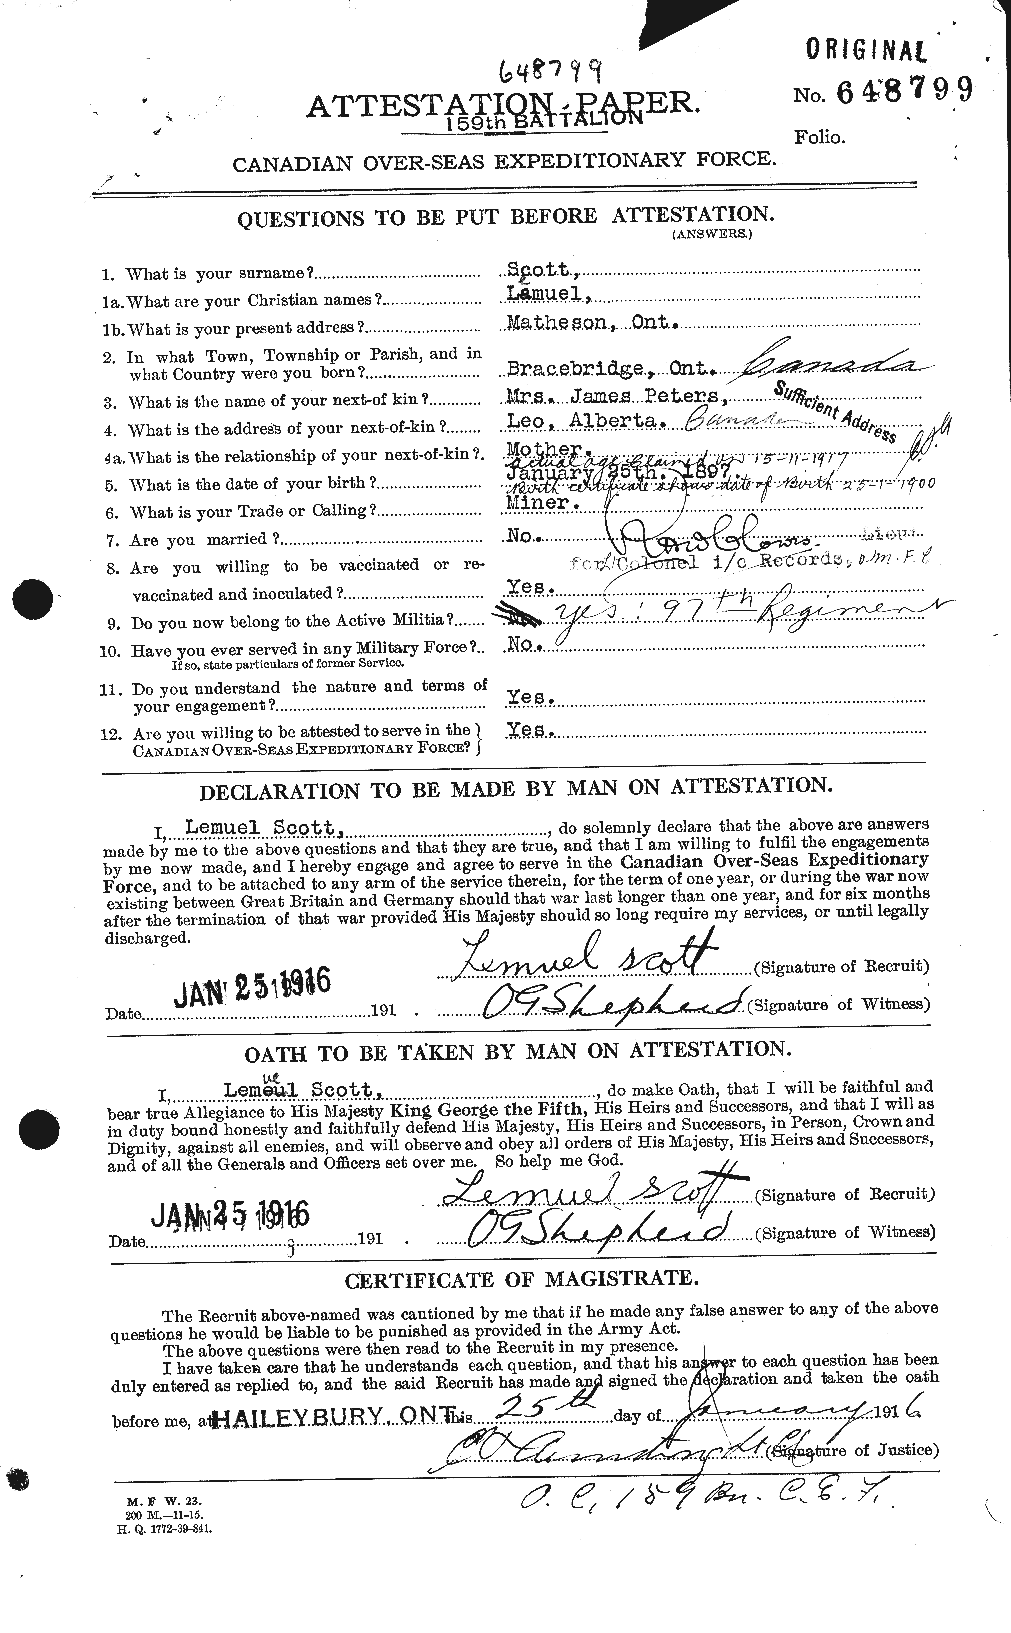 Dossiers du Personnel de la Première Guerre mondiale - CEC 084145a